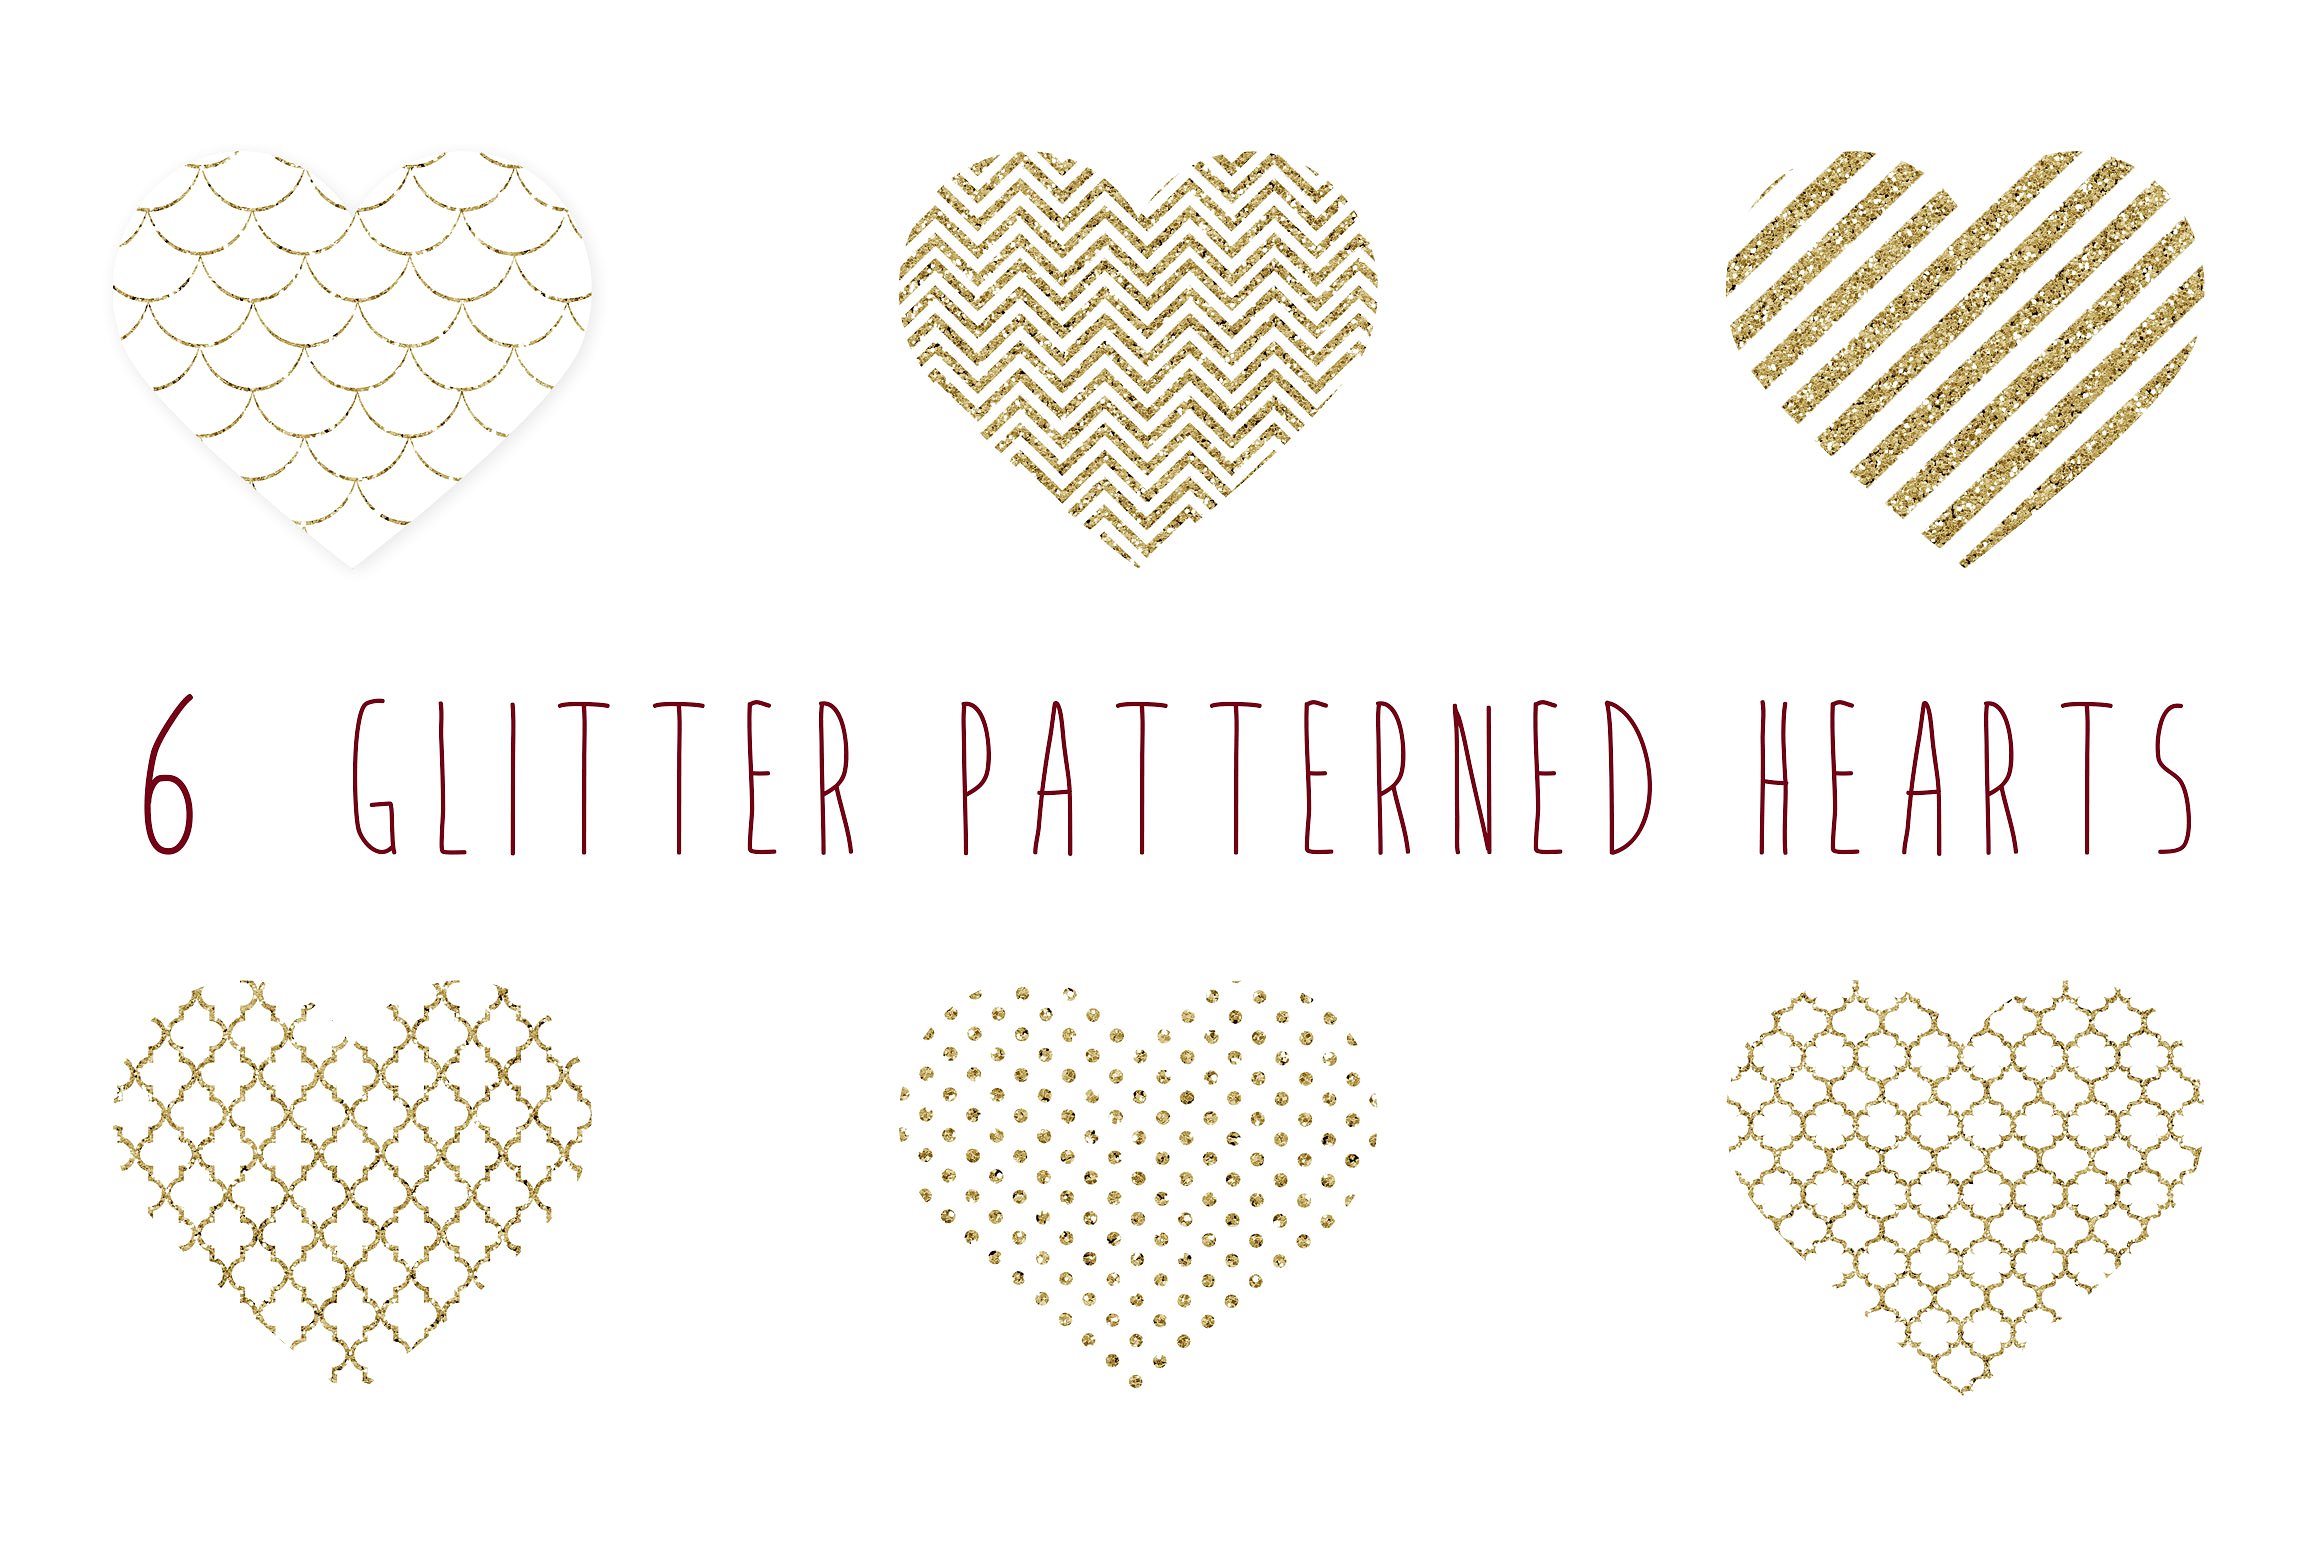 现代时尚爱心形状设计素材Glitter patterned